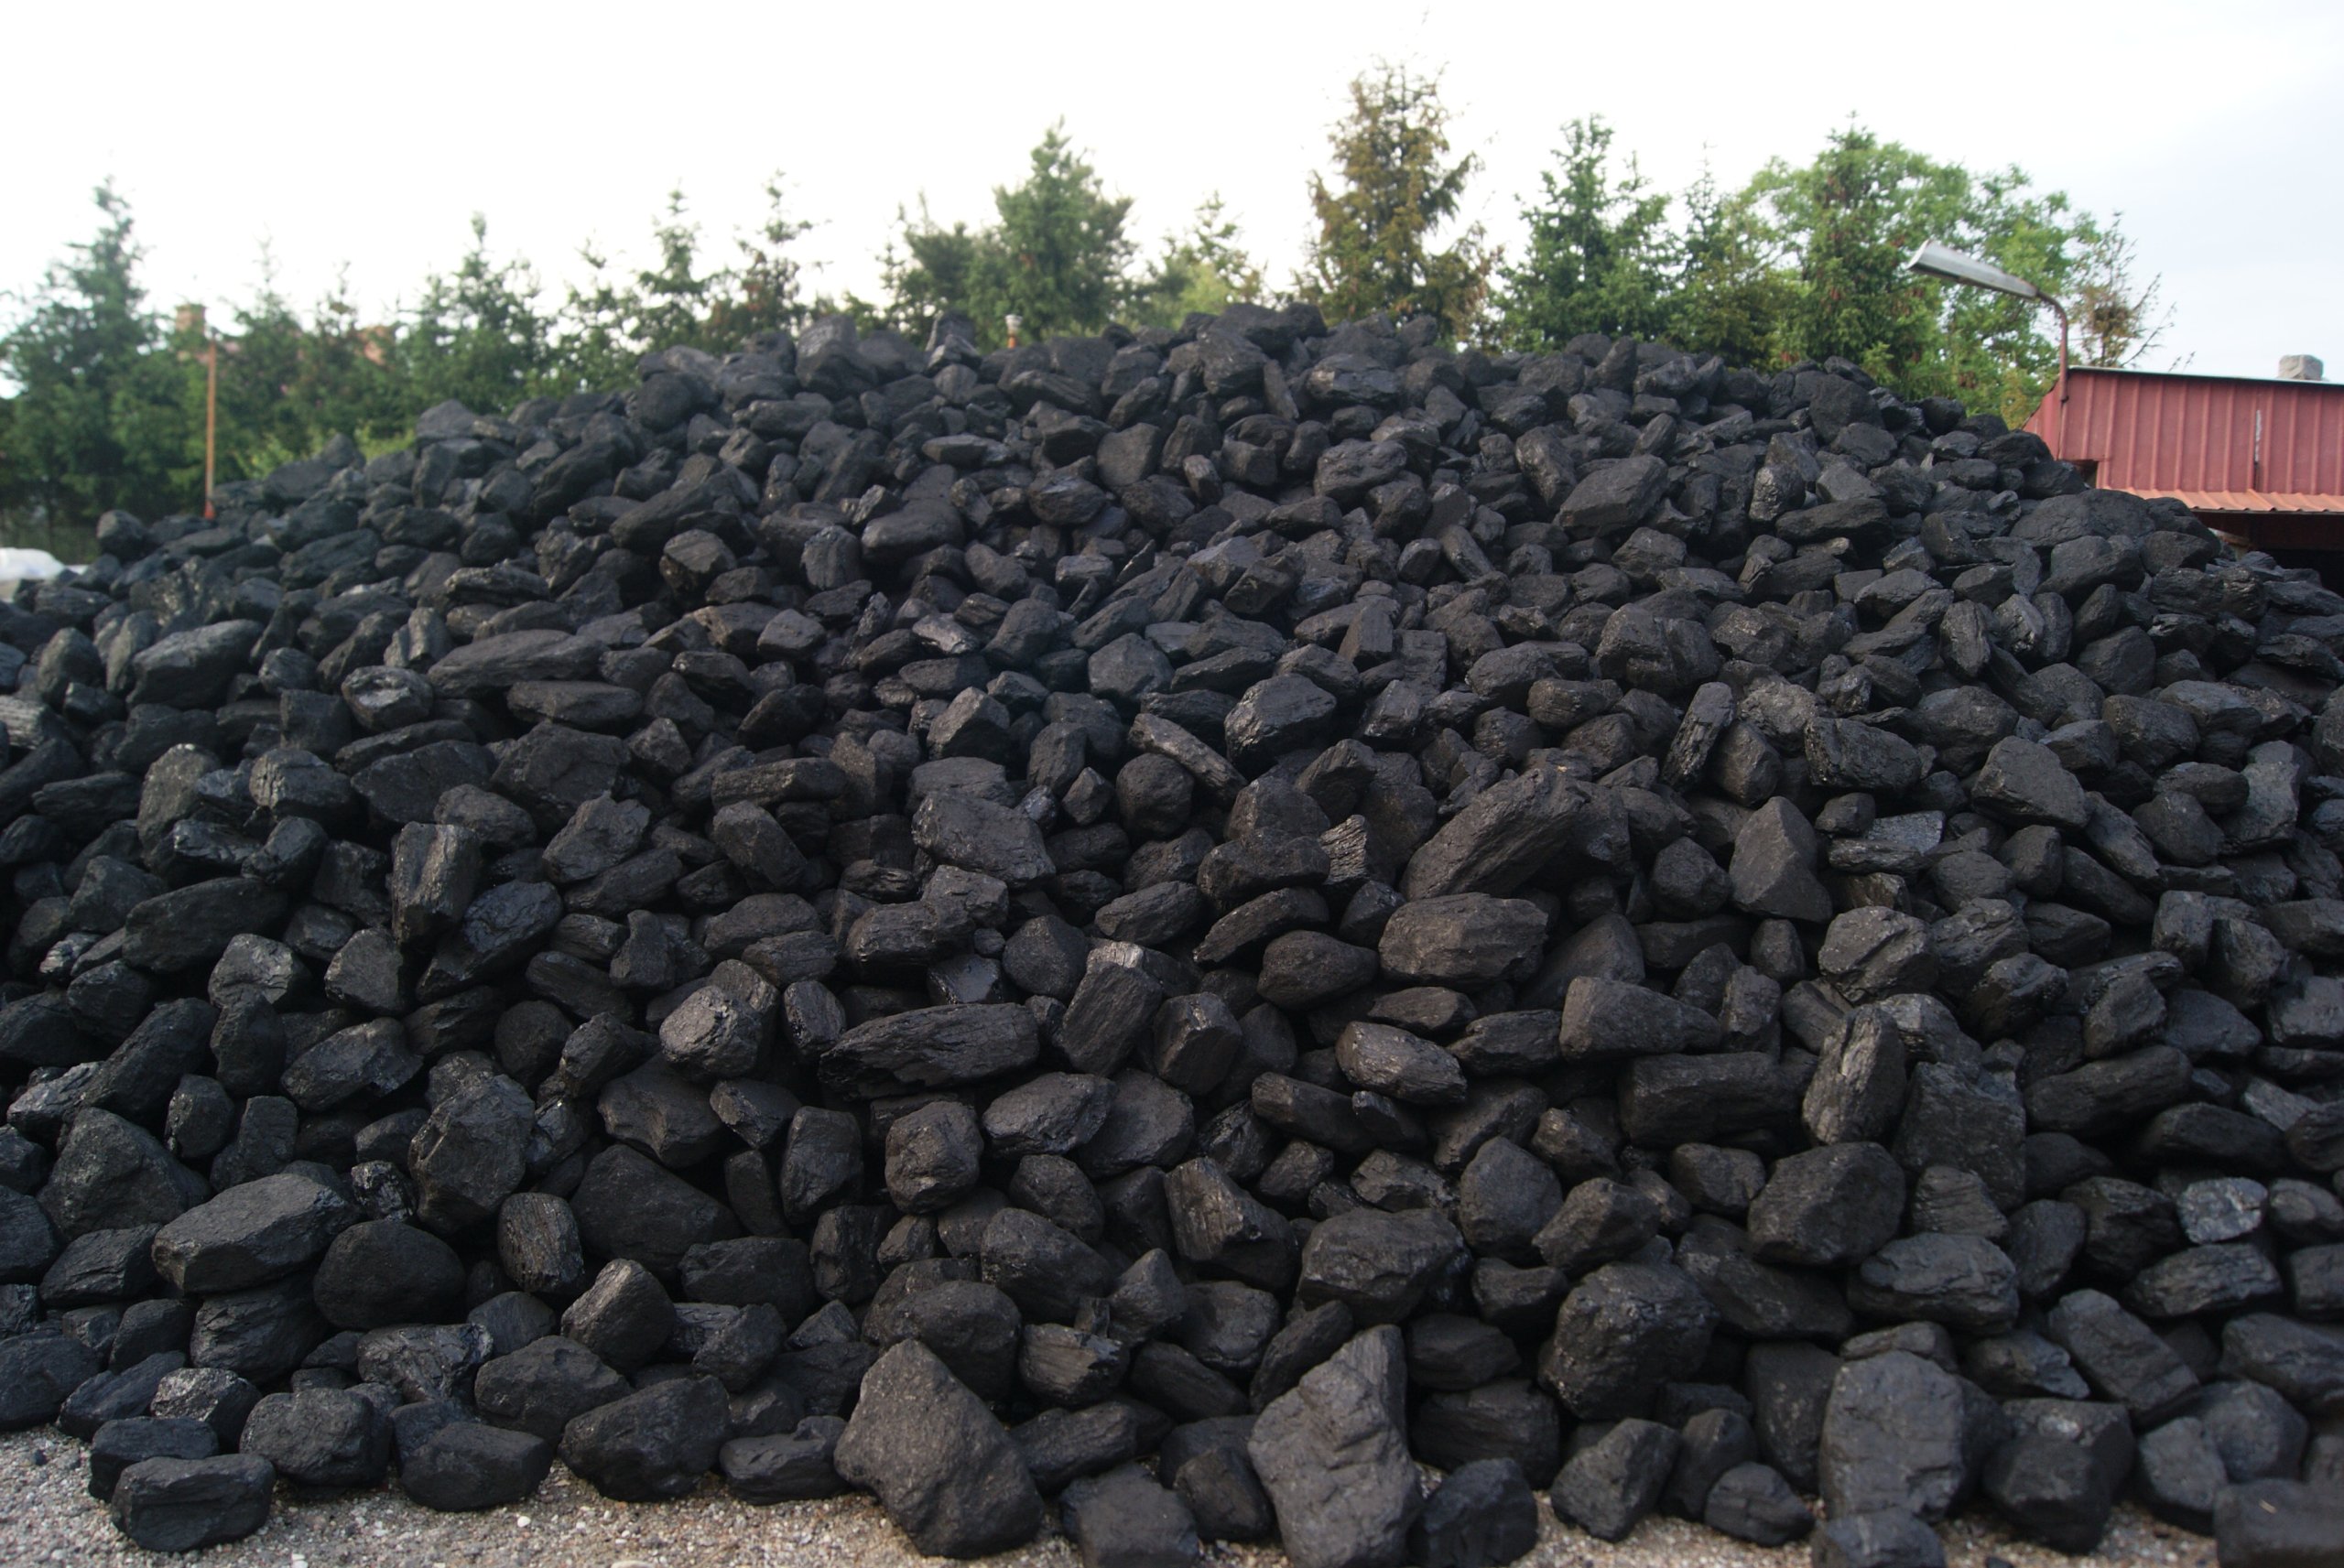 Купить уголь в новосибирске с доставкой. Уголь. Уголь дрова. Каменный уголь. Куча угля.